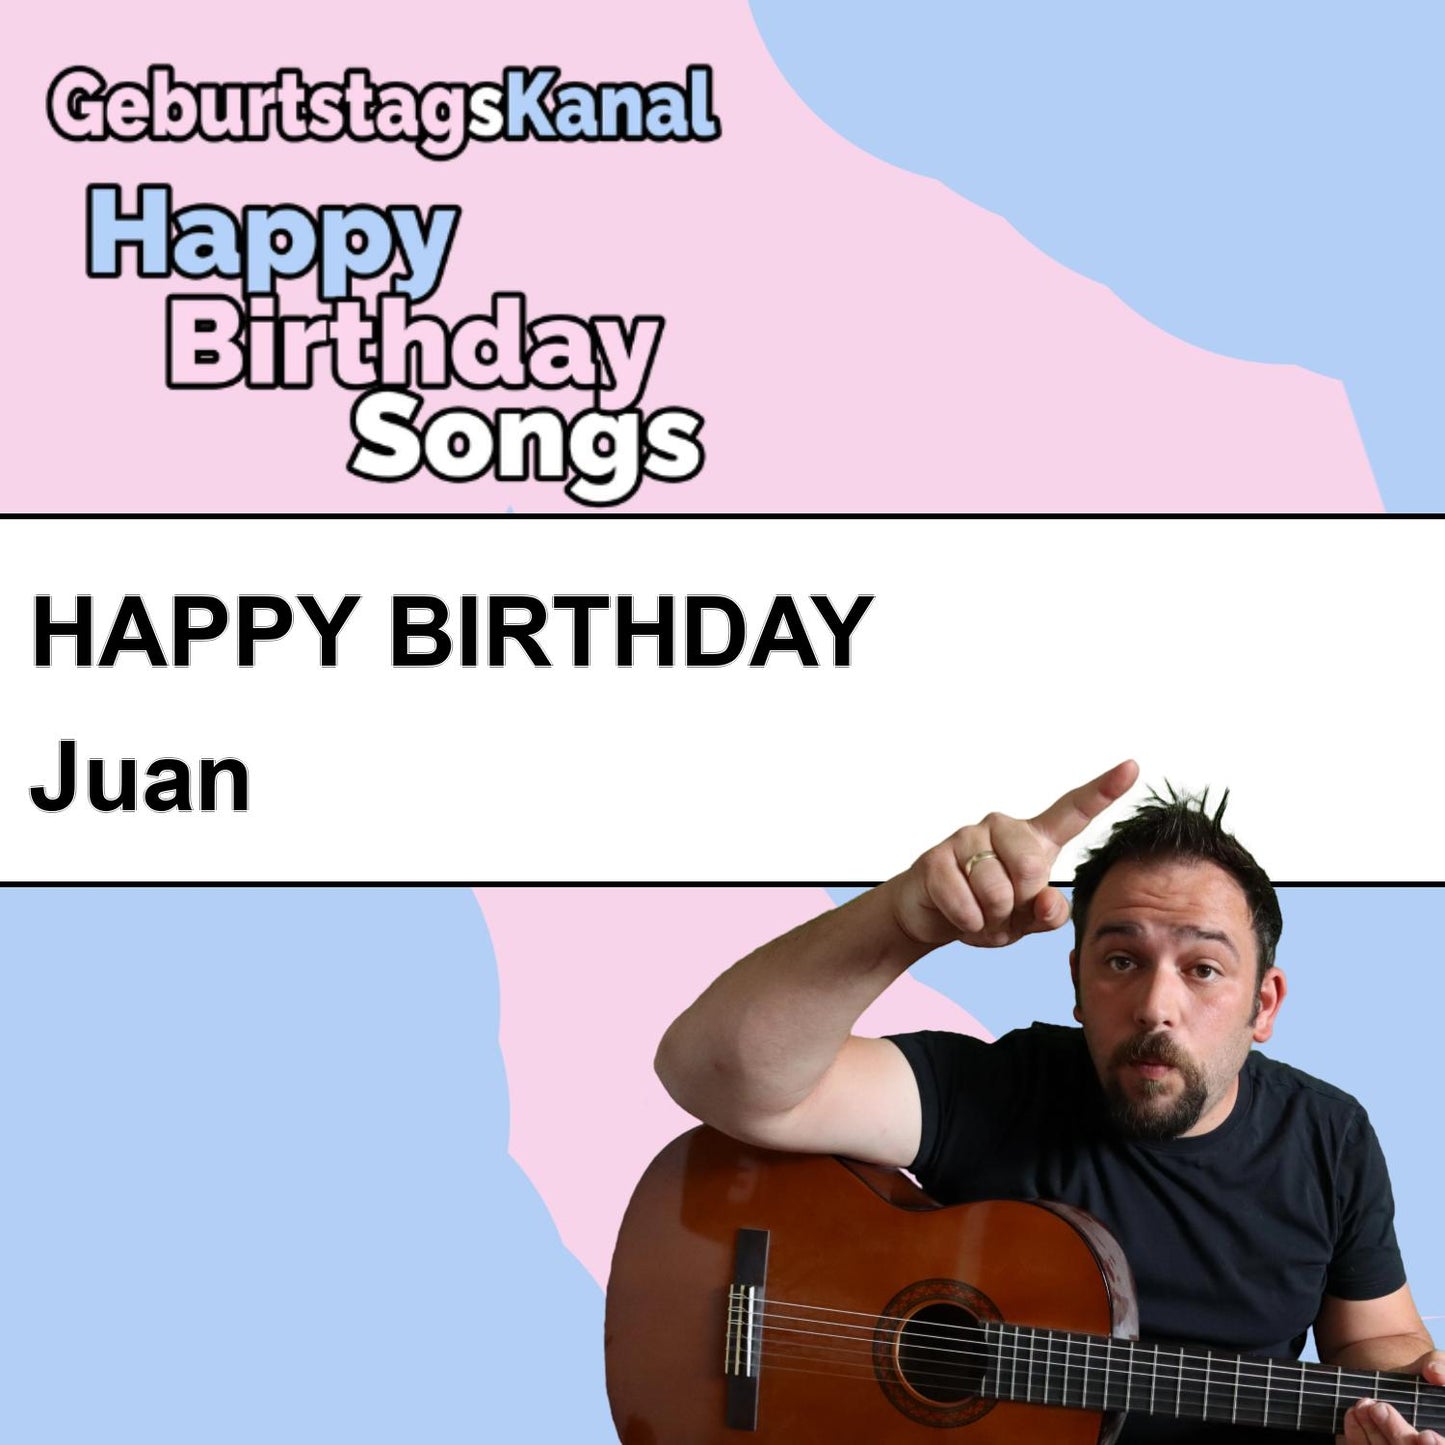 Produktbild Happy Birthday to you Juan mit Wunschgrußbotschaft